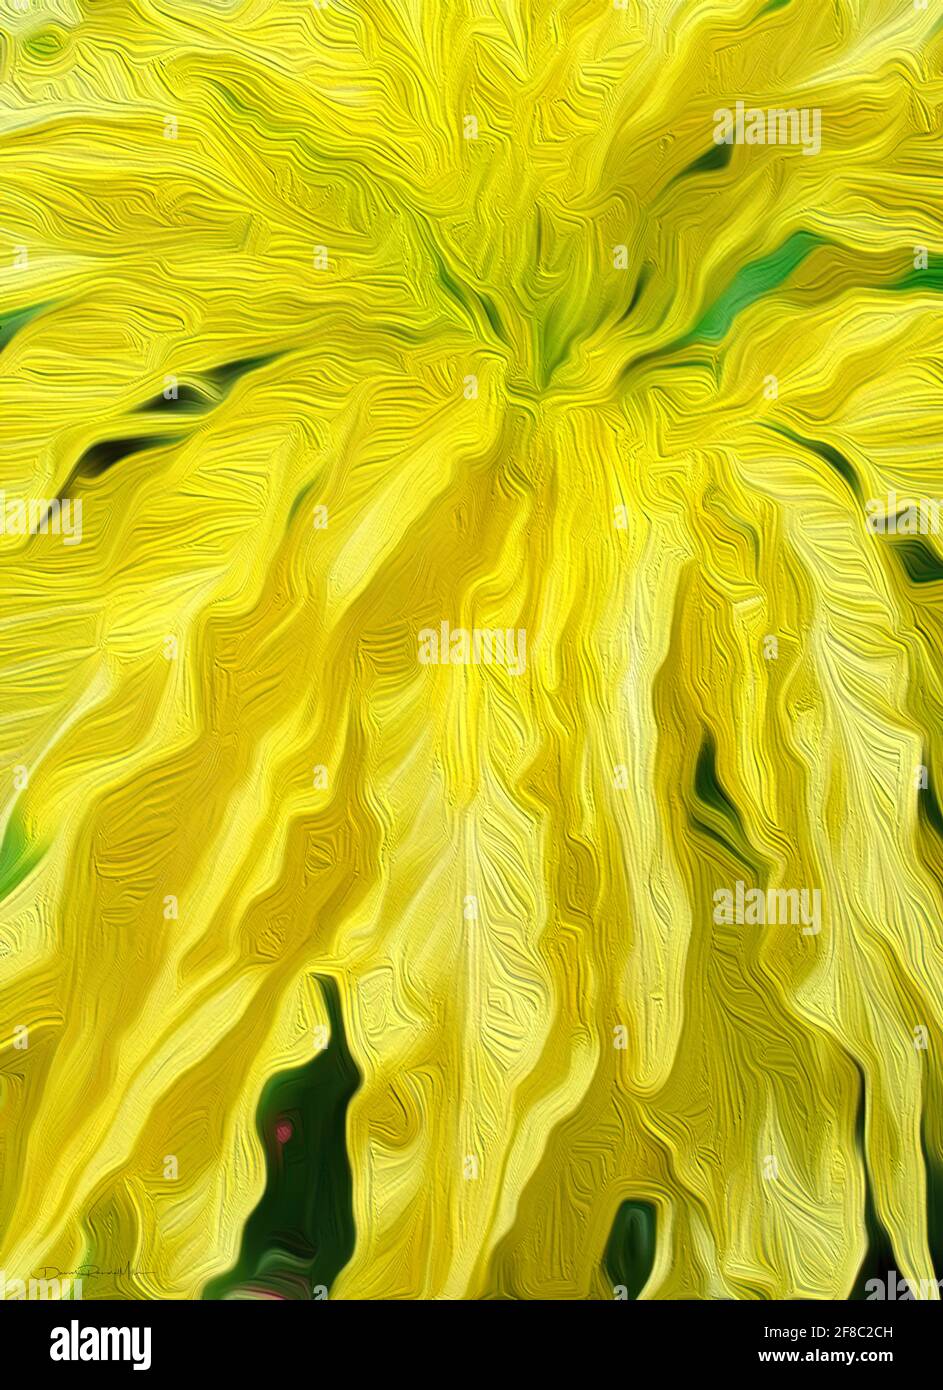 Dies ist ein schönes, hochwertiges Kunstwerk eines Details aus einer großen gelben amaranthus-Pflanze. Es misst 26.92 Zoll x 37.08 Zoll Das große, hängende pe Stockfoto